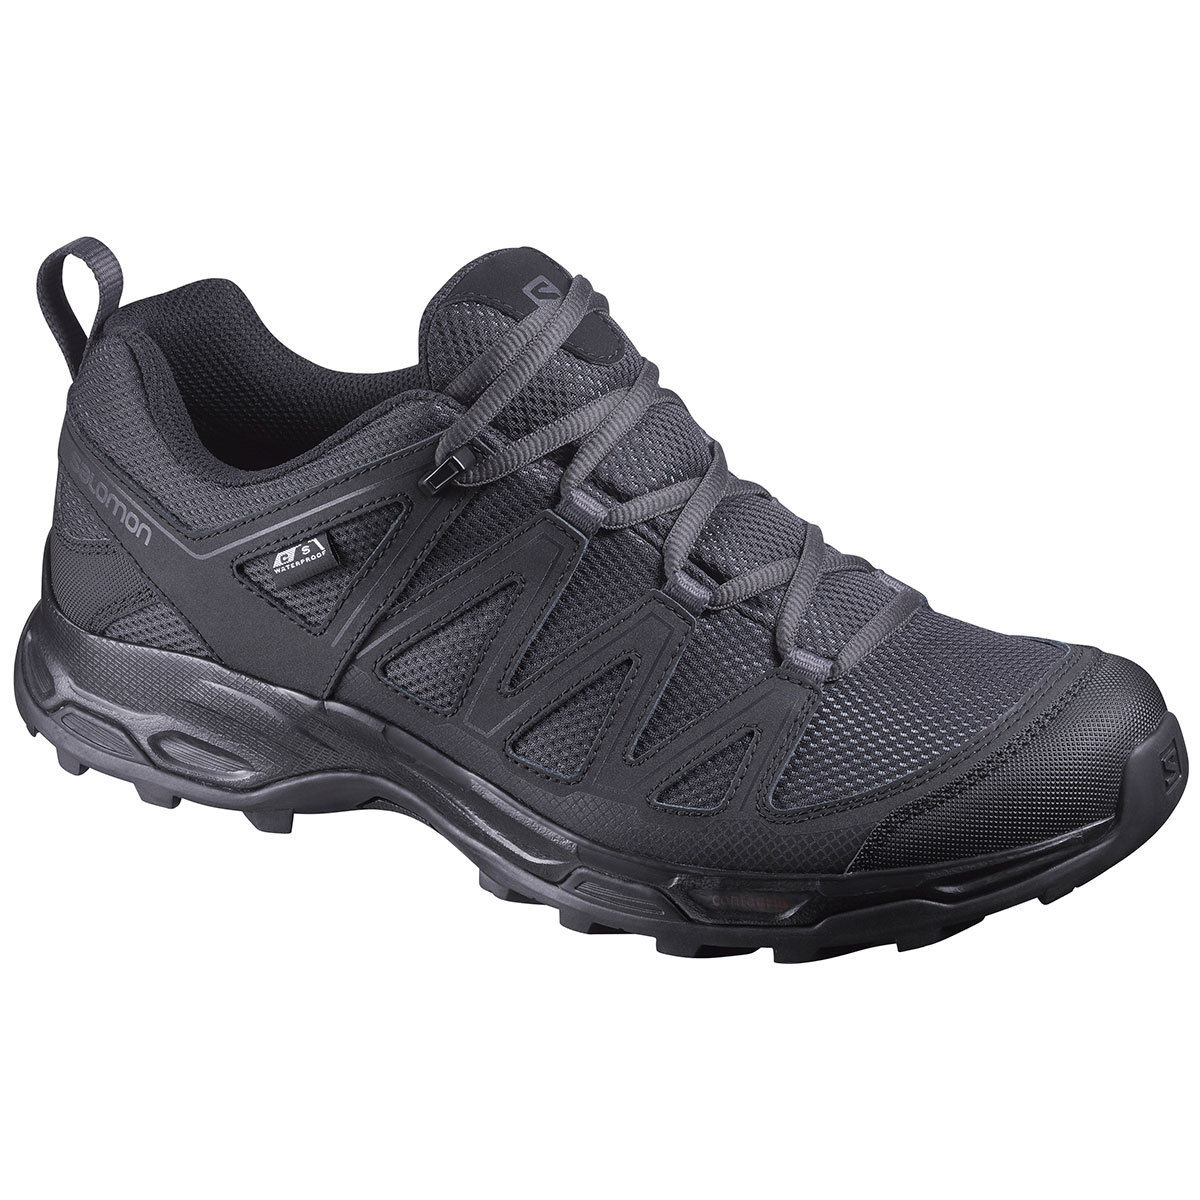 Salomon Men's Pathfinder Low Climashield Waterproof Hiking Shoes - Black, 8.5